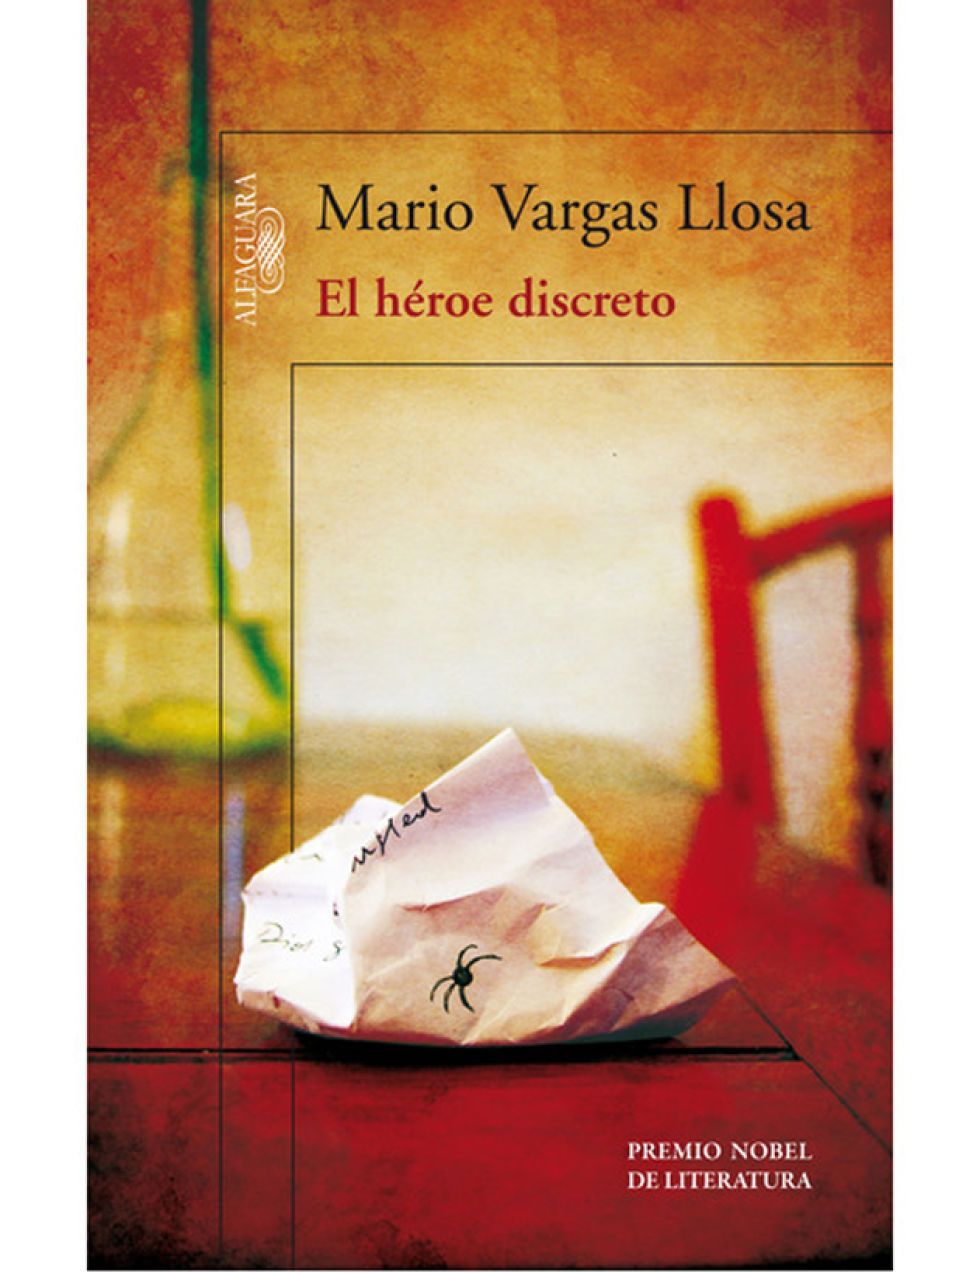 Monografía Tumba flojo El Héroe discreto' el último libro de Mario Vargas Llosa